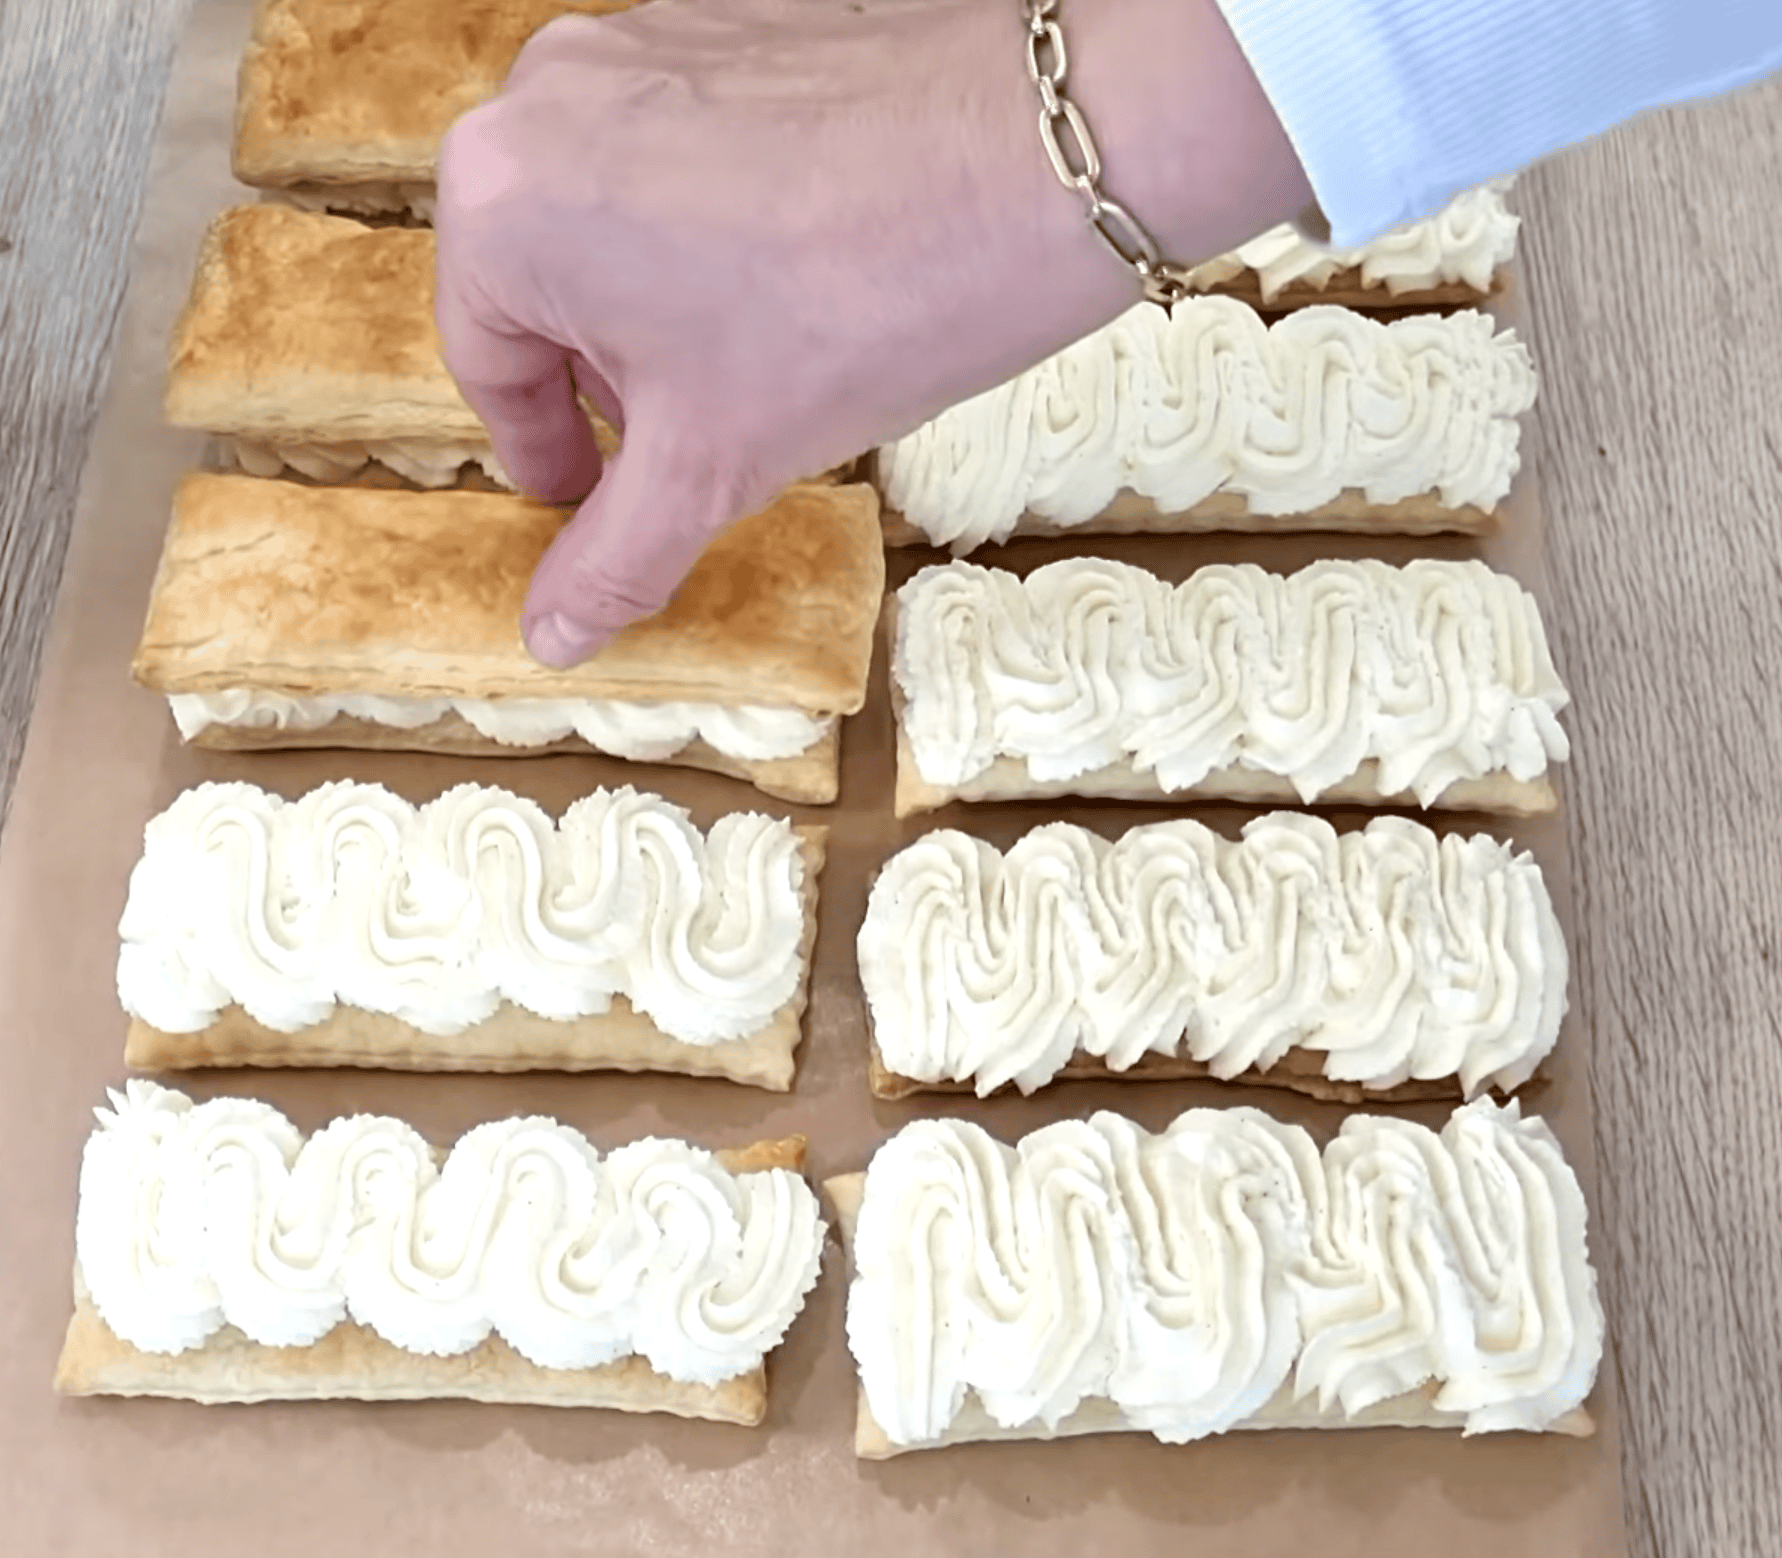 Eklerki z ciasta francuskiego